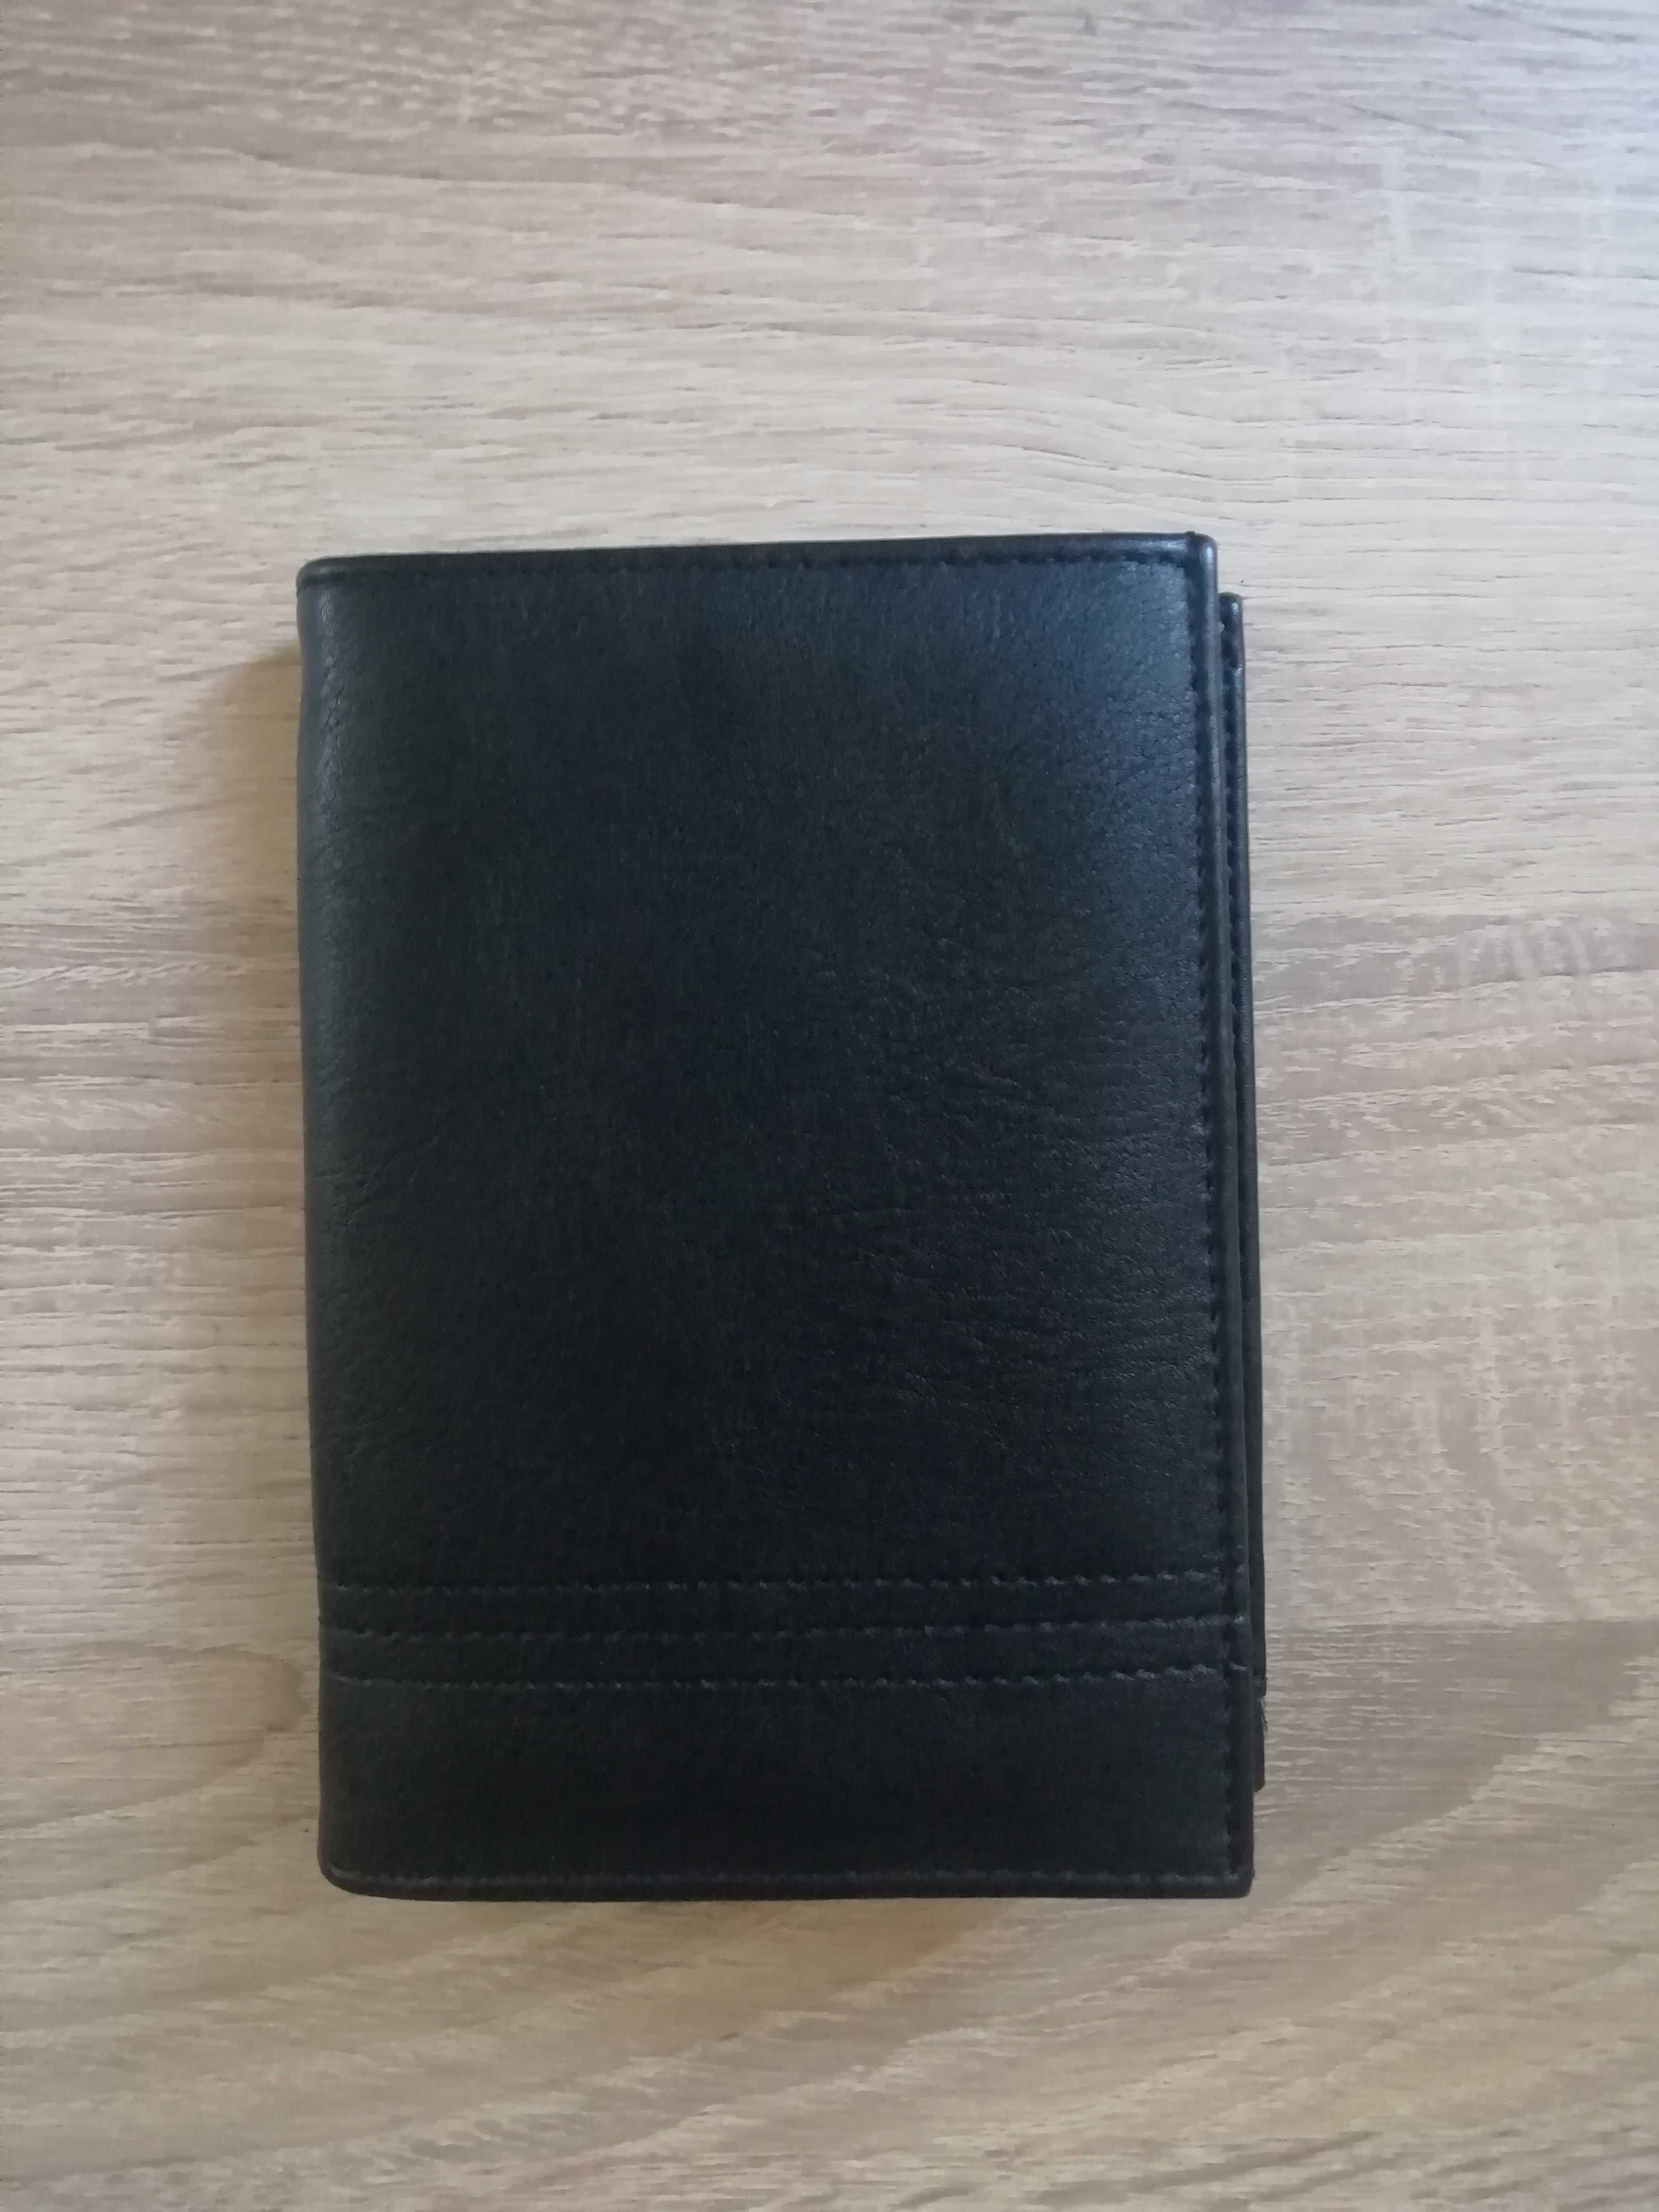 Duży portfel, piękny i elegancki, czarny, nowy, tanio